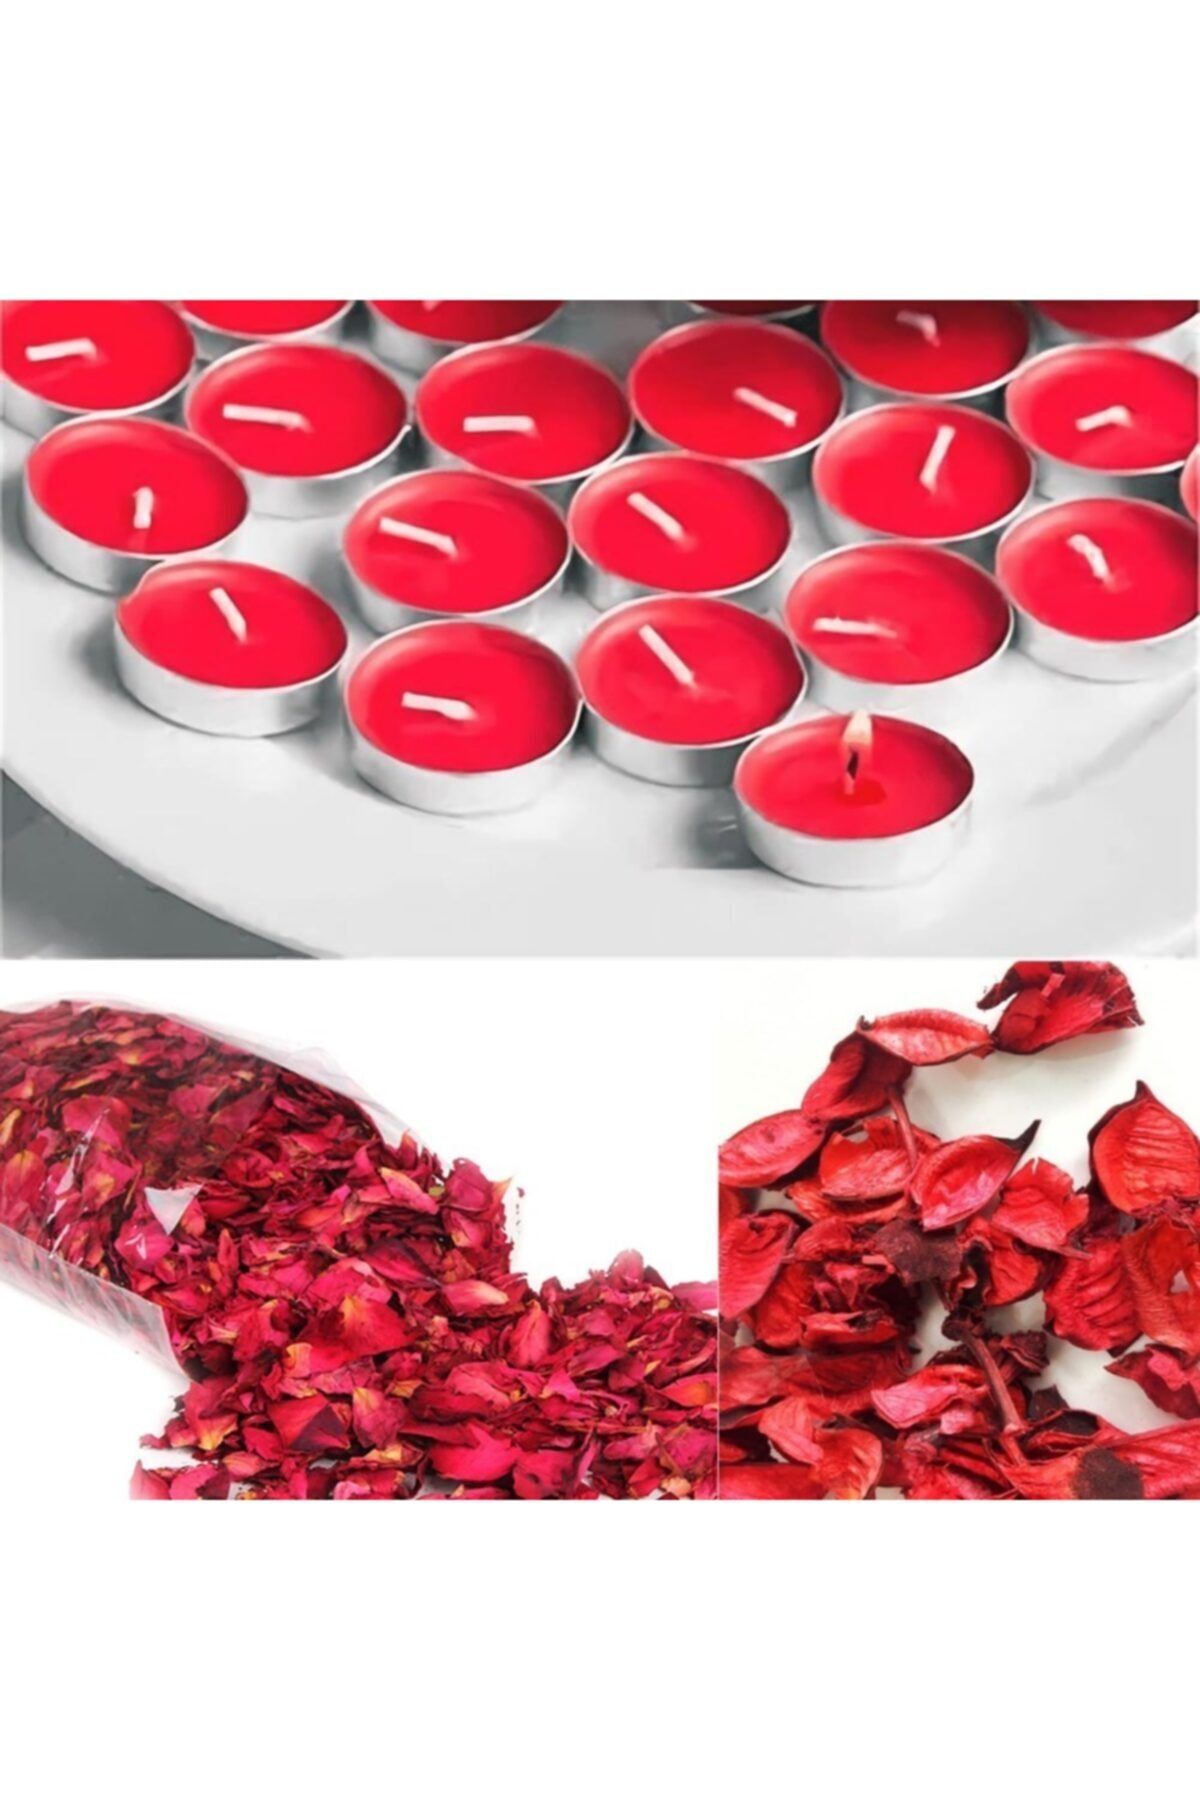 Genel Markalar Süsleme Kuru Gül Yaprağı 1000 Adet Ve 25 Adet Kırmızı Tealight Mum Romantik Set